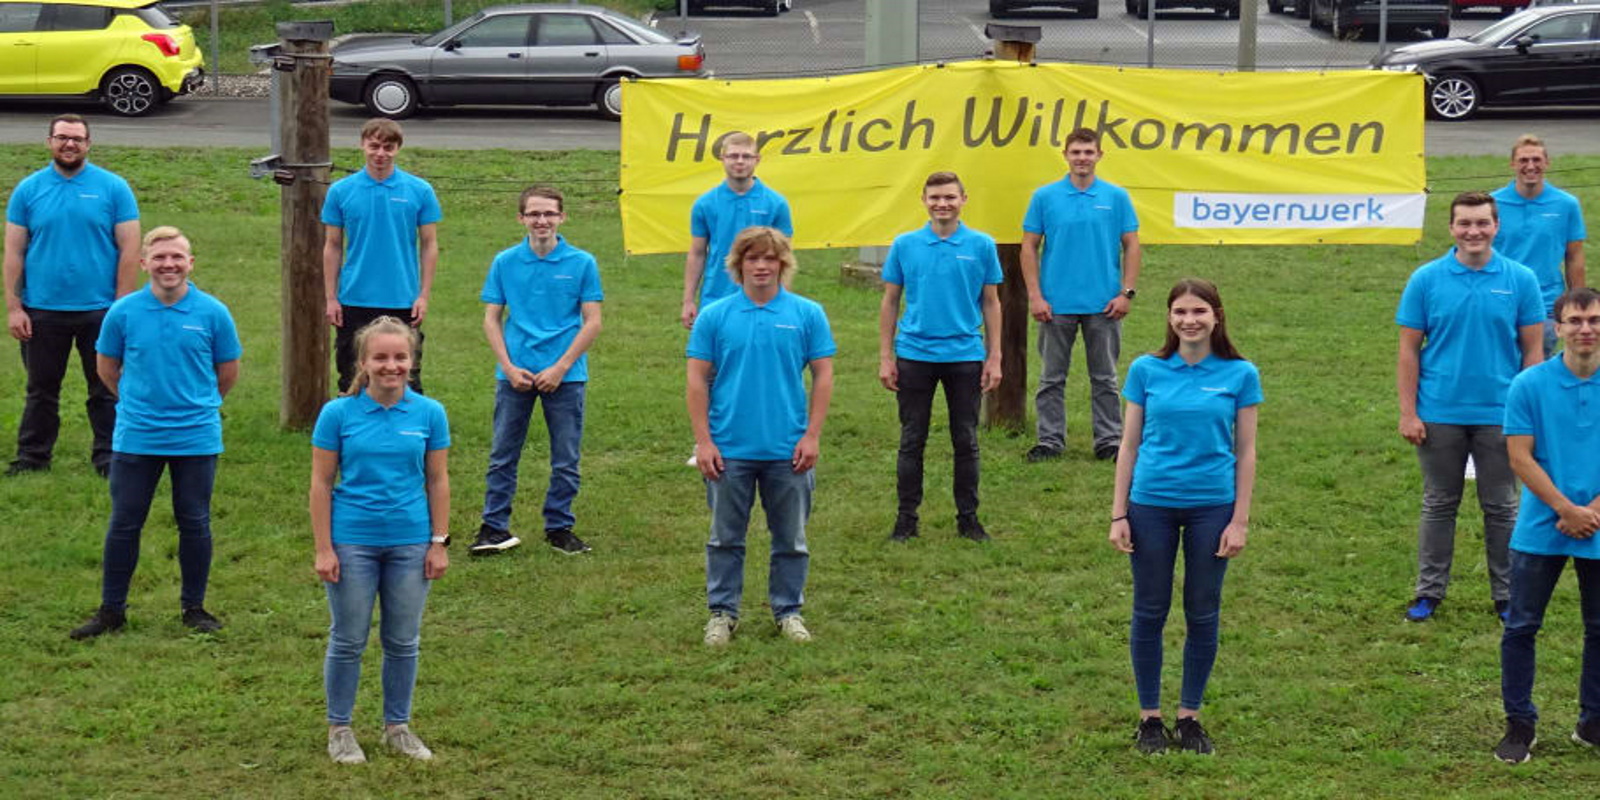 Bei der Bayernwerk Netz GmbH beginnen insgesamt 72 Auszubildende ihre Karriere, 14 in der Region Oberfranken in Bayreuth